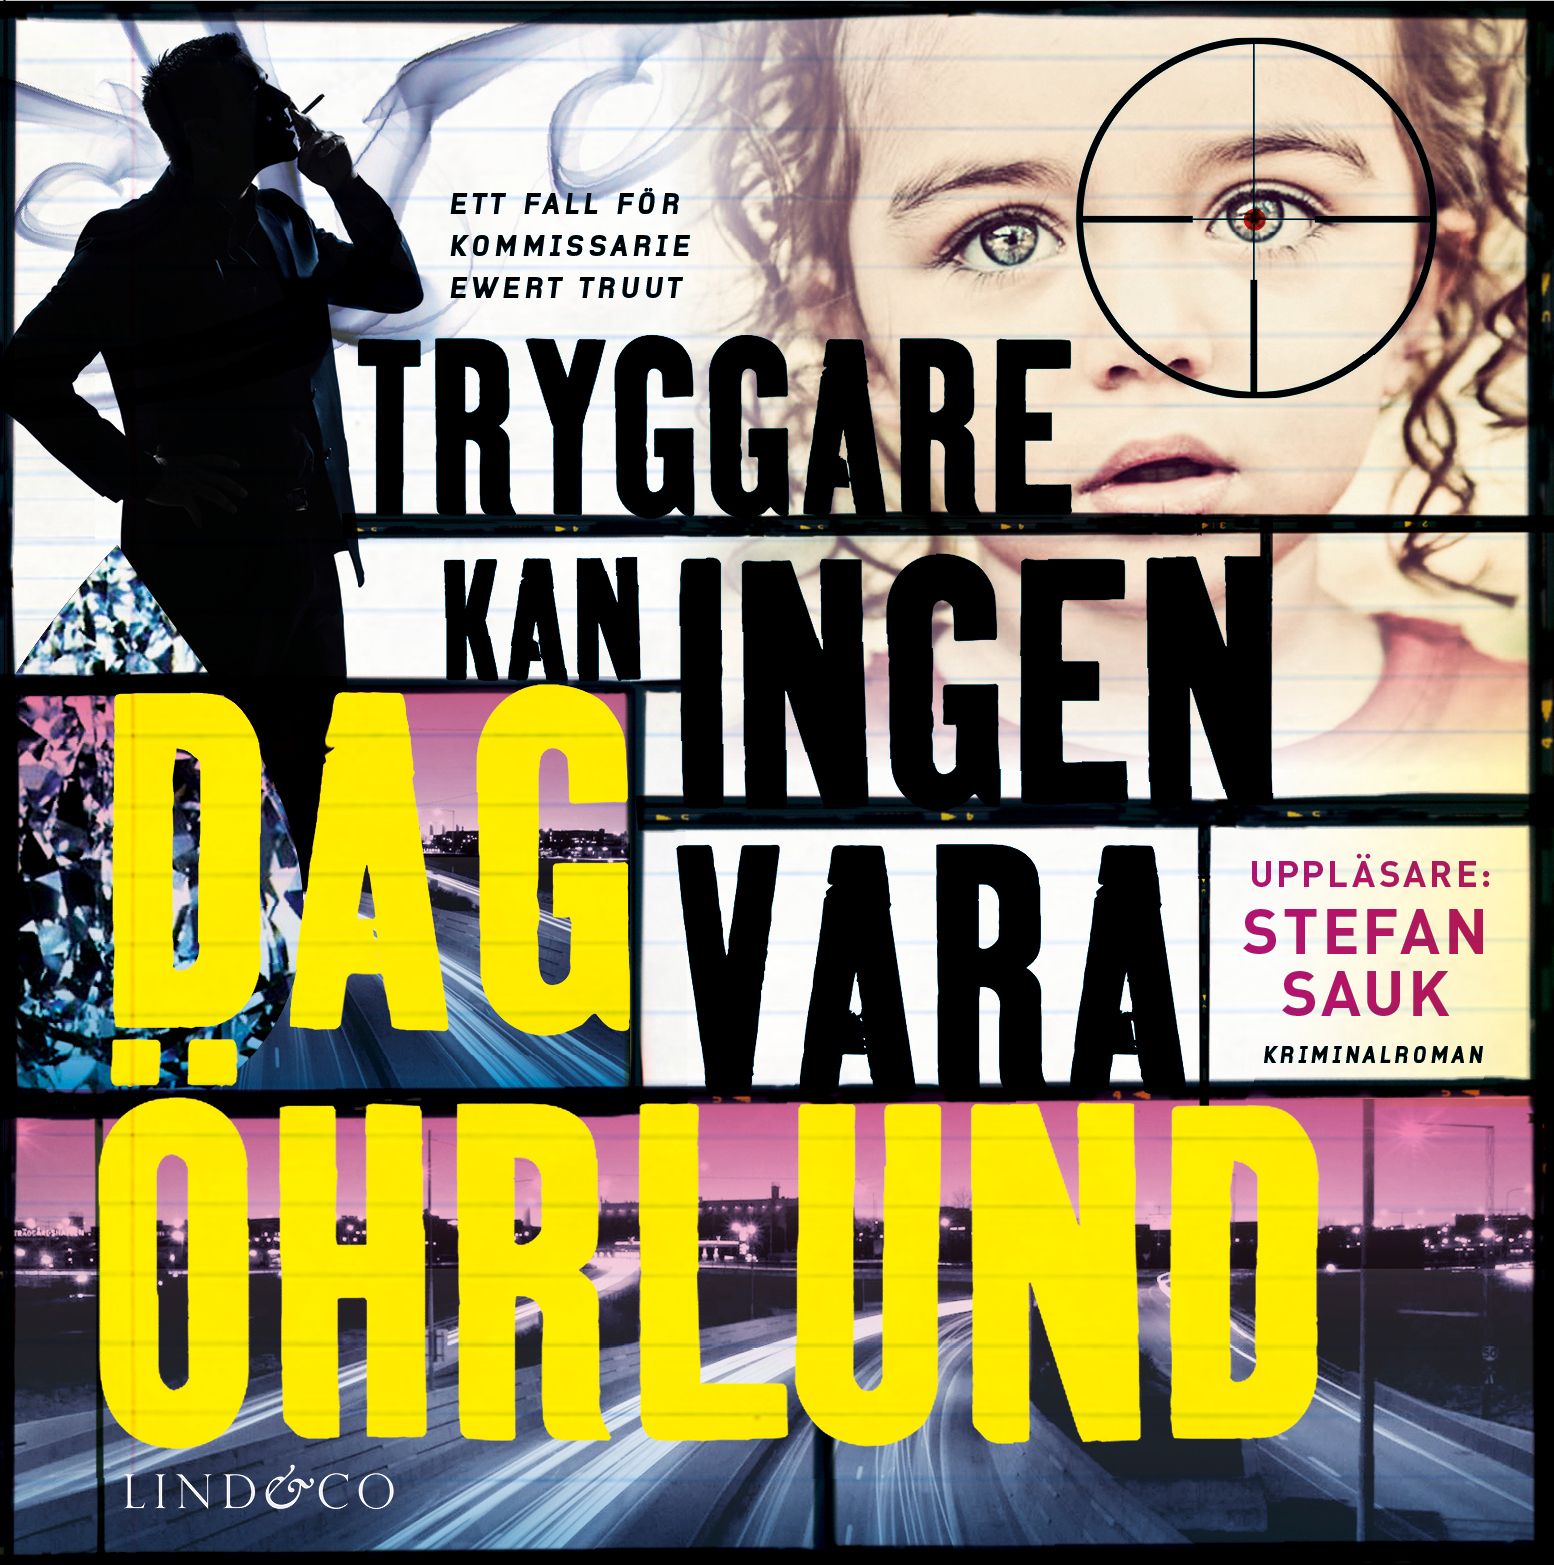 Tryggare kan ingen vara, ljudbok av Dag Öhrlund